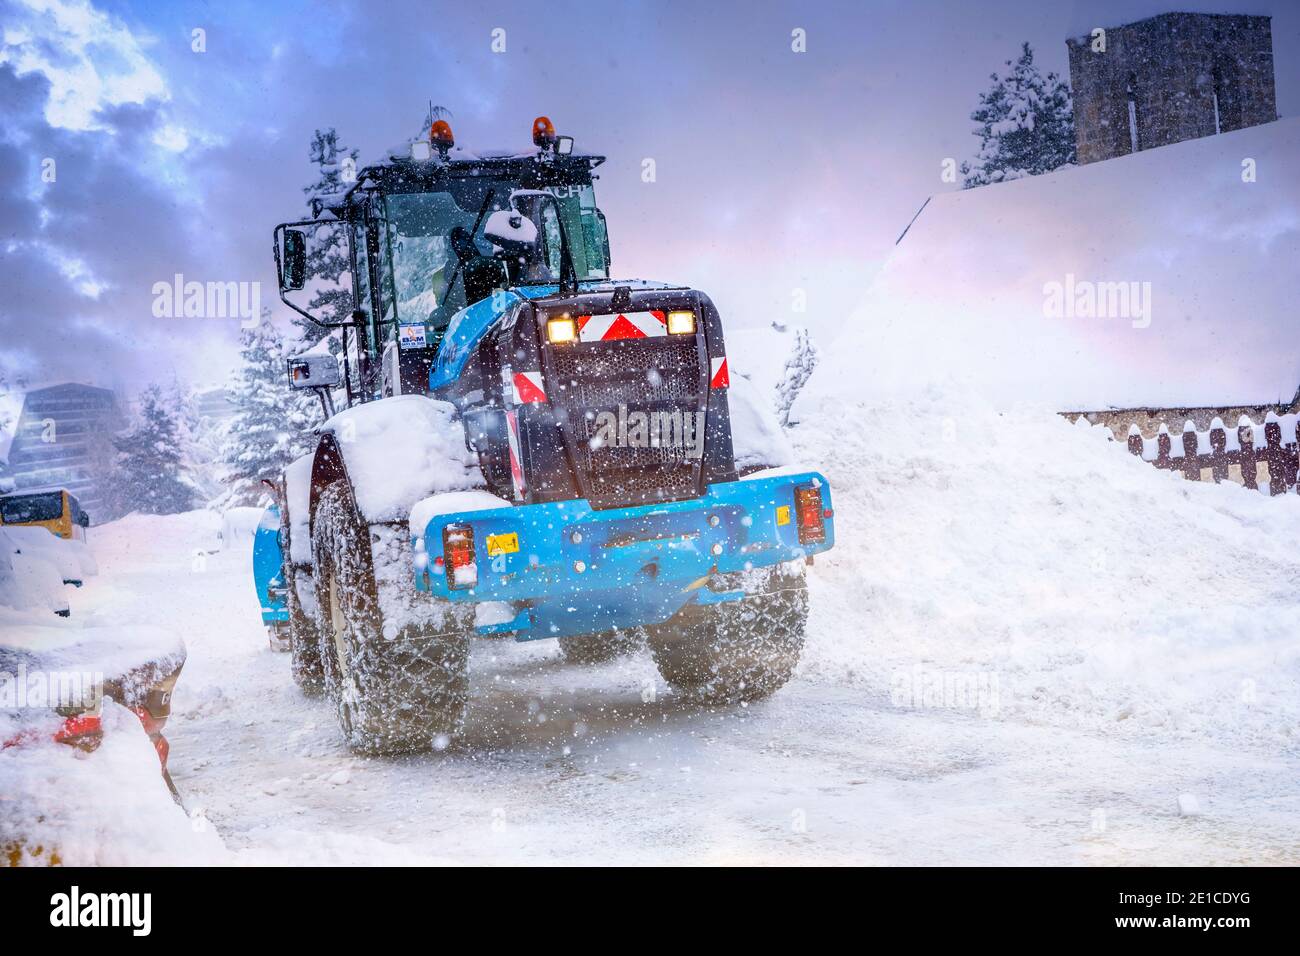 Auron, Francia 01.01.2021 trattore che rimuove la neve dalle grandi rive della neve vicino alla strada su una stazione sciistica. Foto di alta qualità Foto Stock